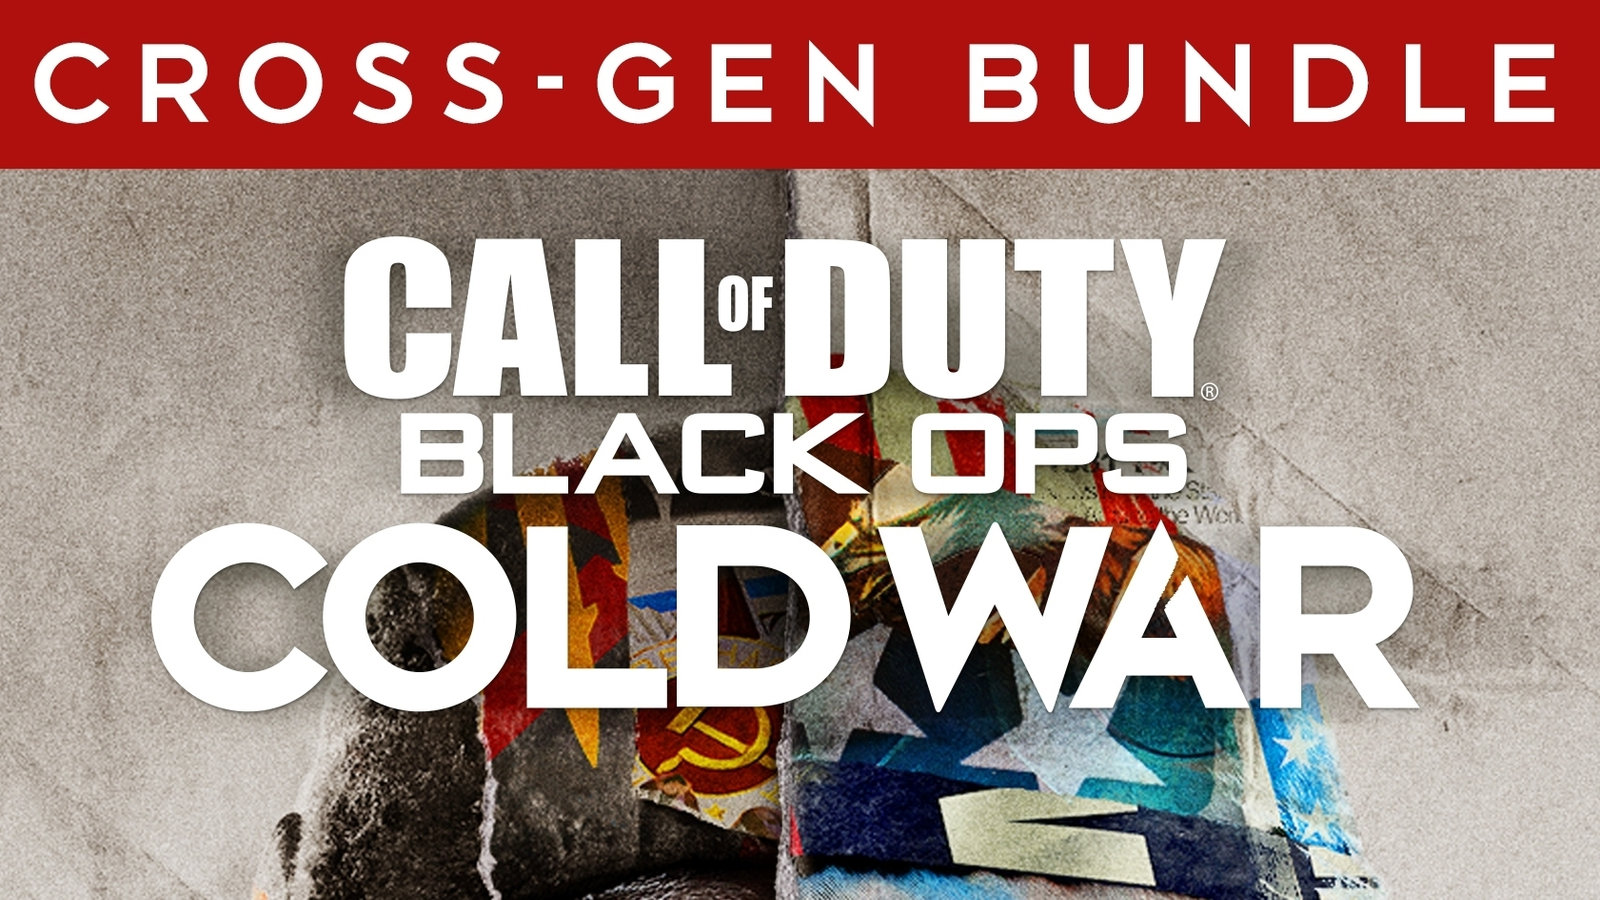 Call of Duty: Vanguard - Cross-Gen Bundle PS4 PS5